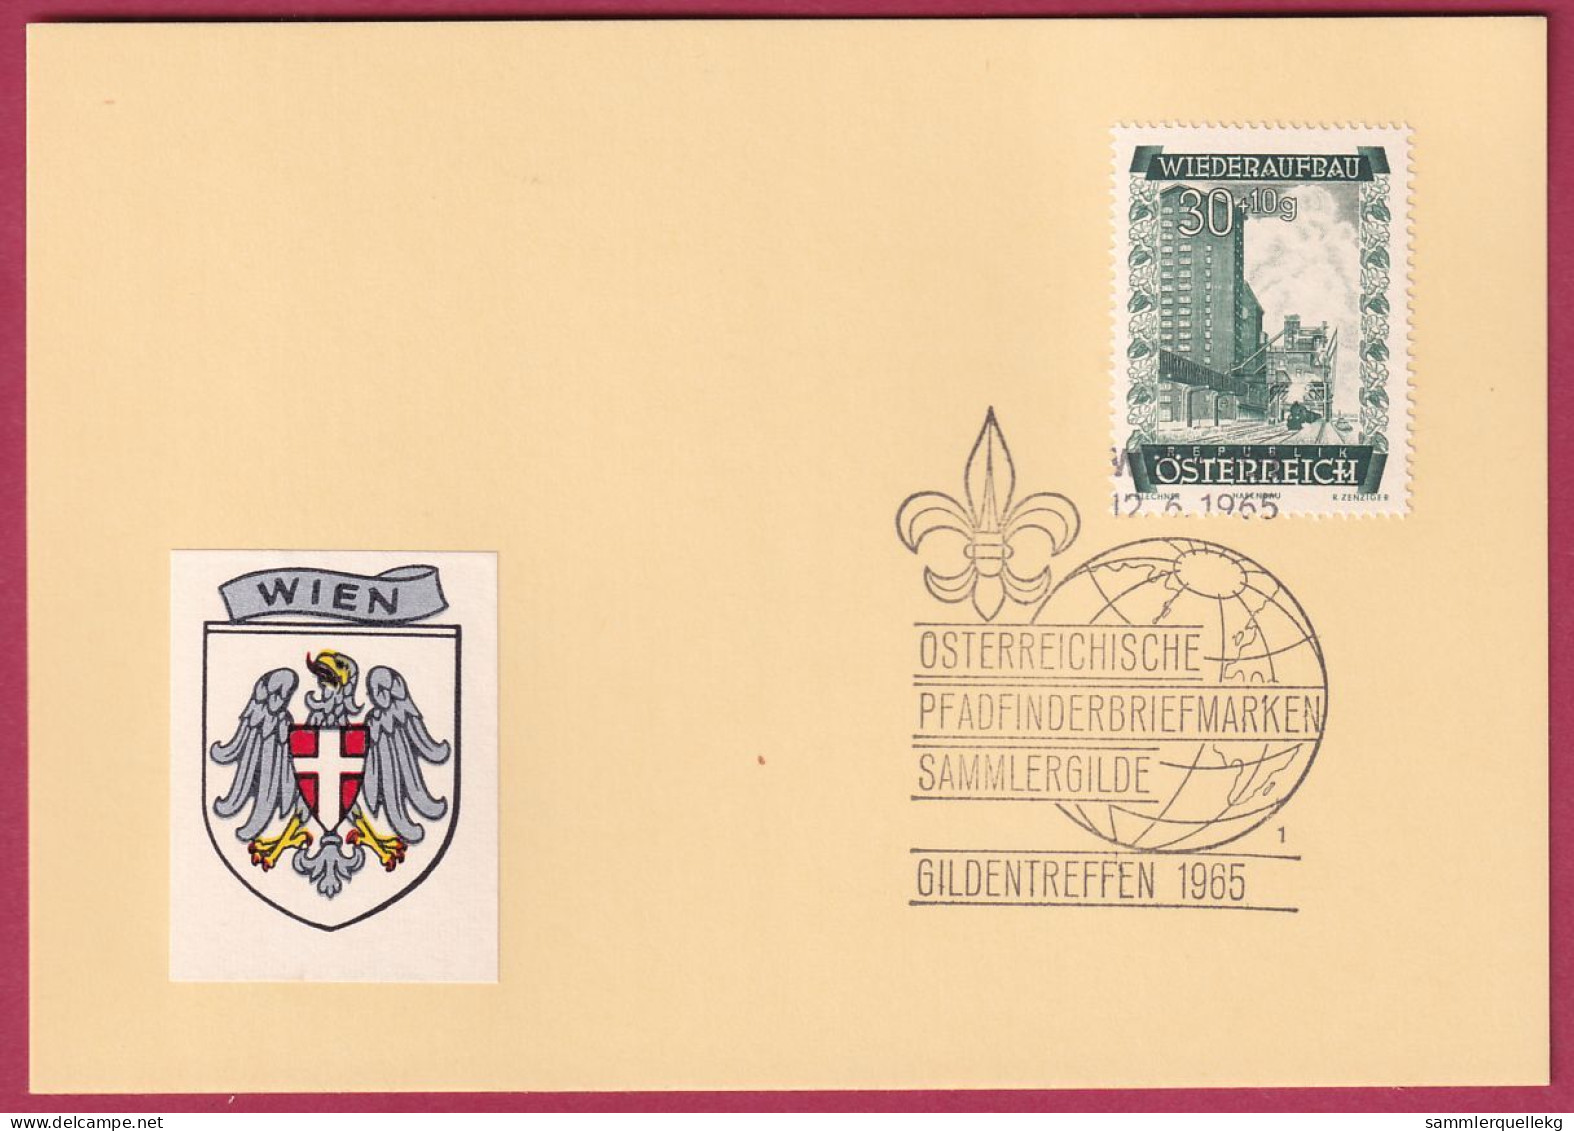 Österreich MNr. 860 Sonderstempel 12. 6. 1965 Österreich Pfadfinderbriefmarken Sammlergilde 1965 - Storia Postale